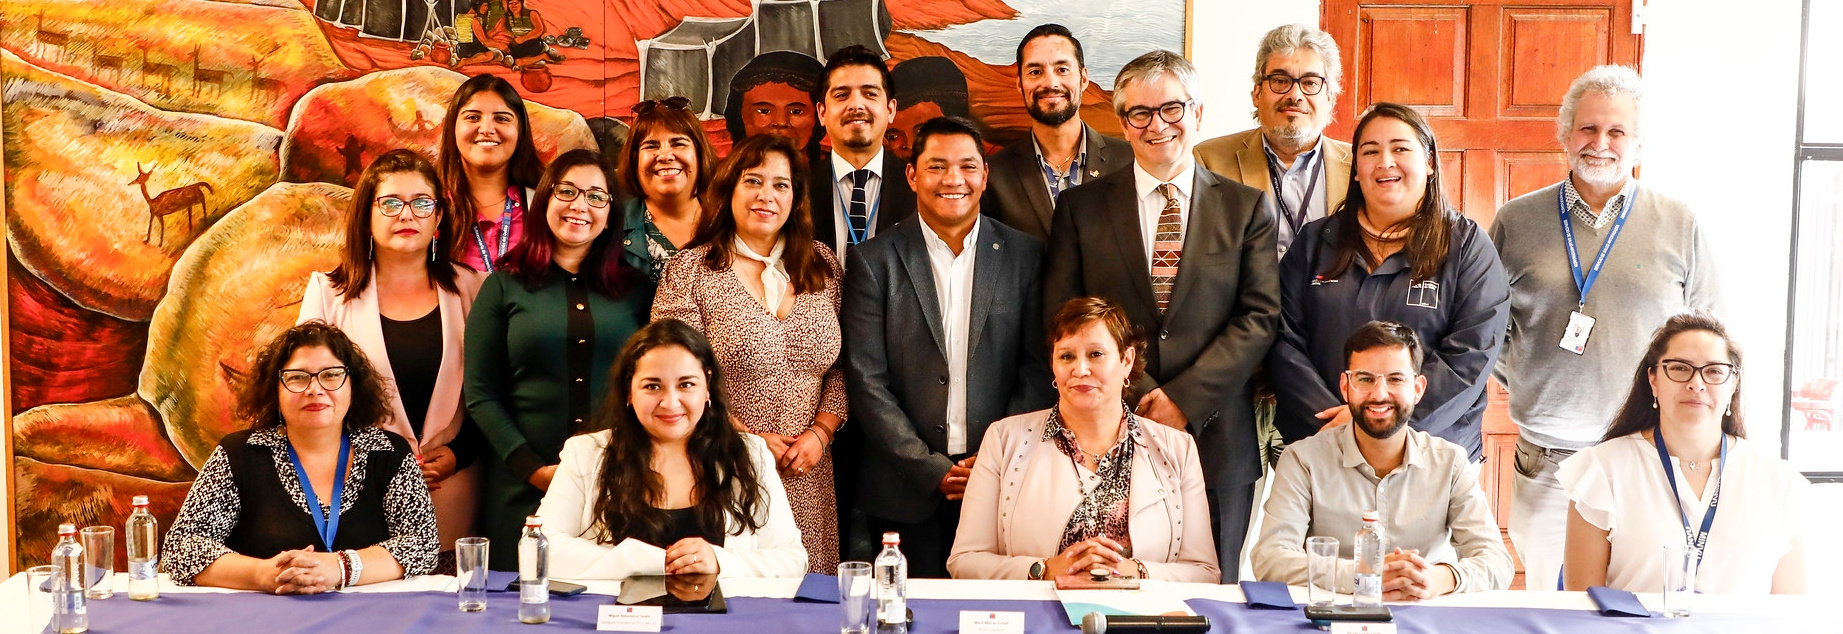 Consejo Regional Extraordinario en Antofagasta por Pacto Fiscal